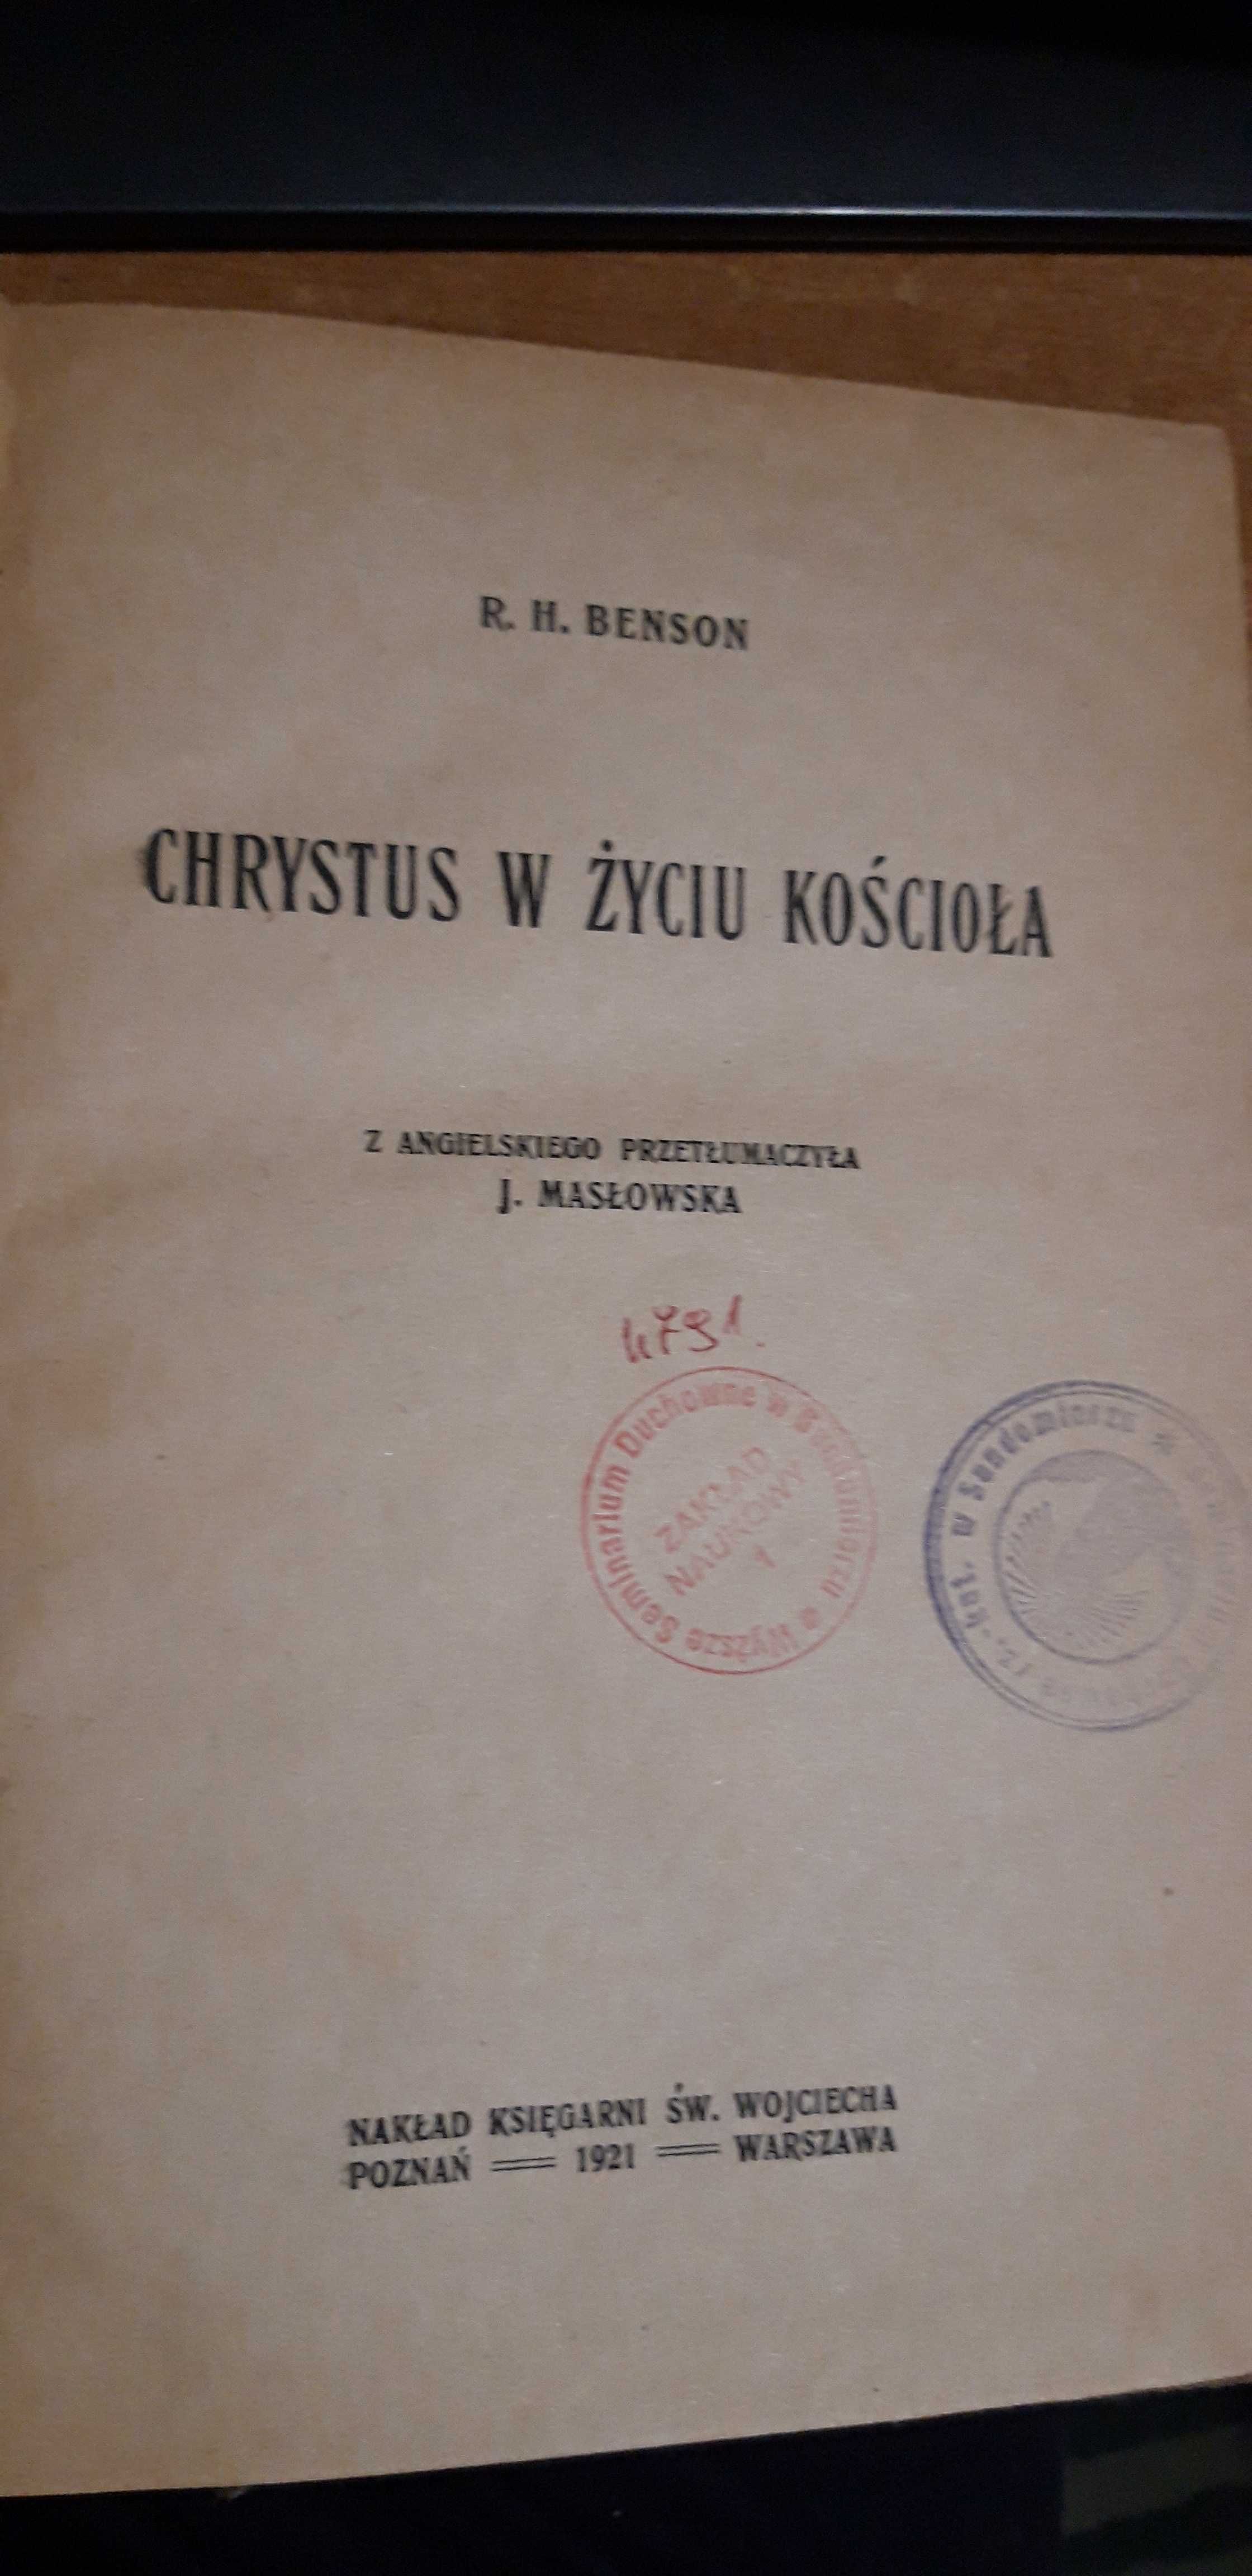 Chrystus w życiu Kościoła- R. H. Benson- Ks. Św. wojciecha 1921opr.